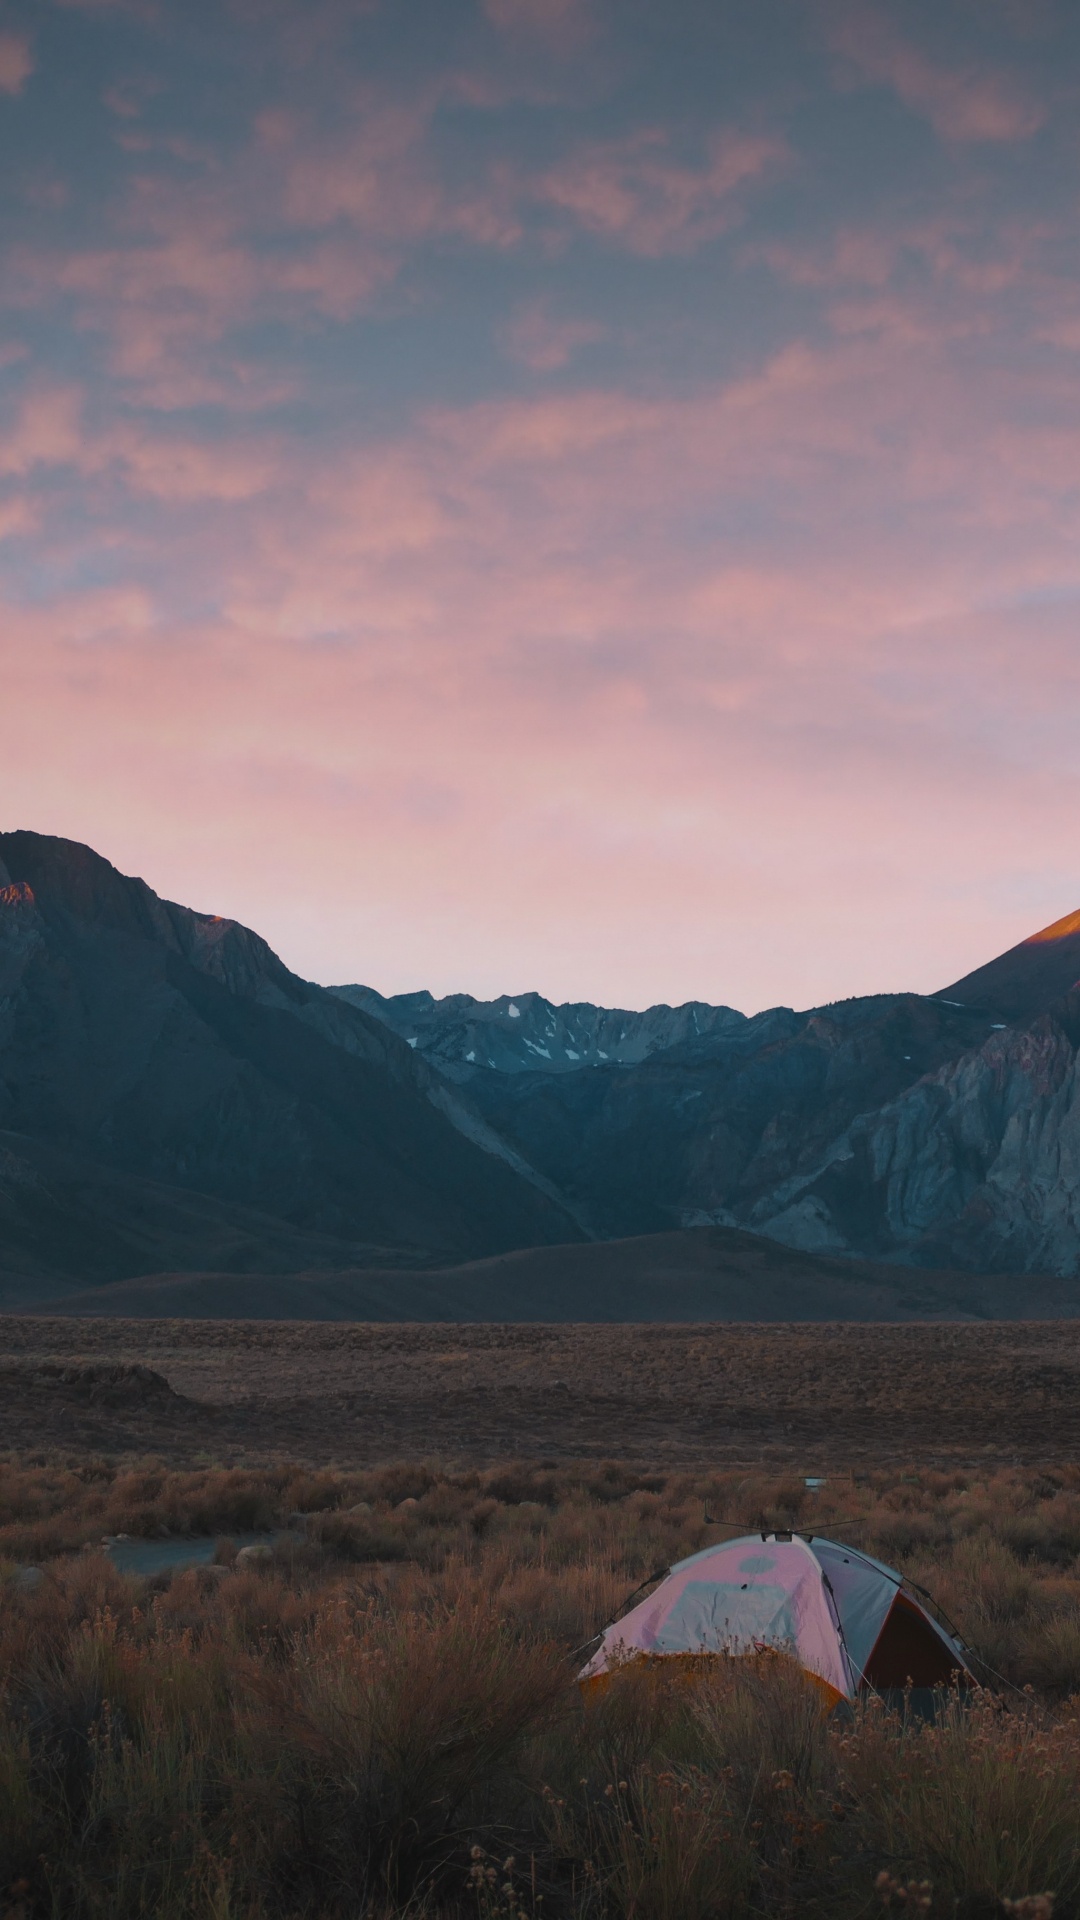 Desierto, Camping, Las Formaciones Montañosas, Montaje de Escenografía, Colina. Wallpaper in 1080x1920 Resolution